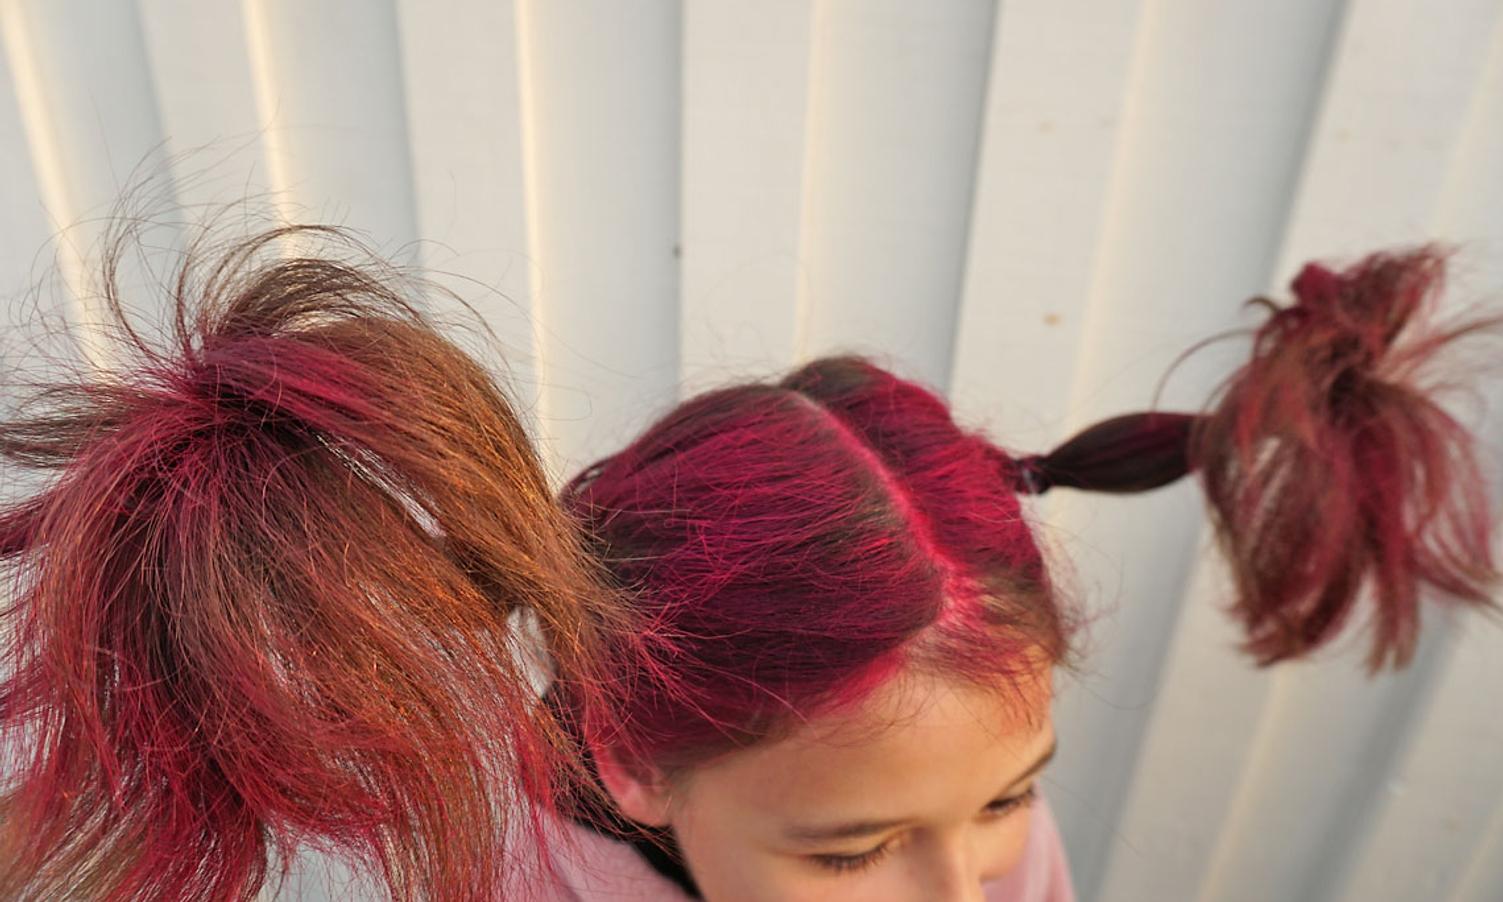 Funny Hair Day på Os barneskule. (Foto: KOG)